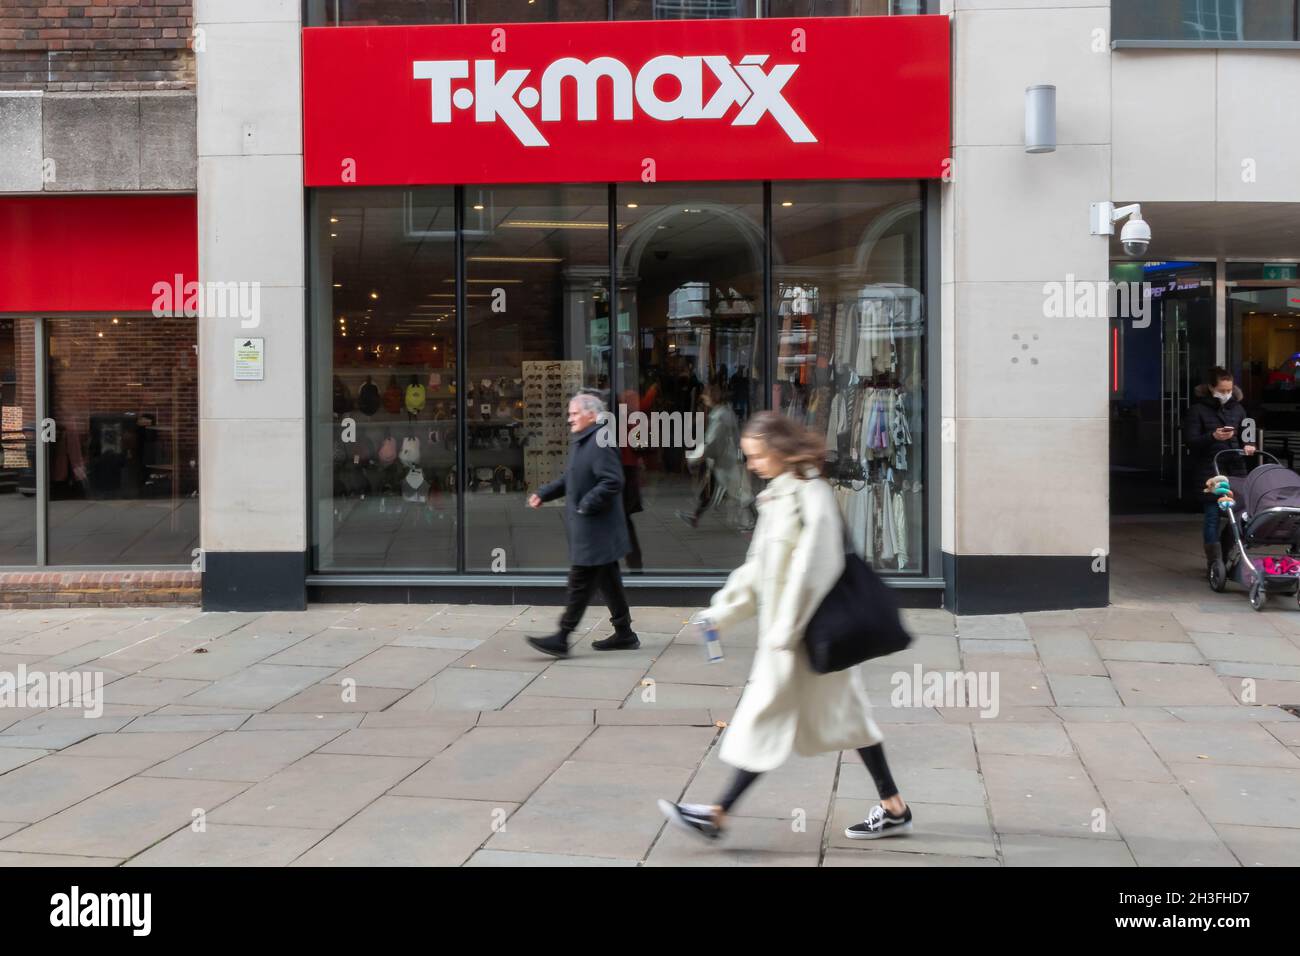 High Wycombe, Inglaterra - Octubre de 22nd 2021: Personas que pasan por una tienda T K Maxx. La tienda es parte de una cadena americana. Foto de stock